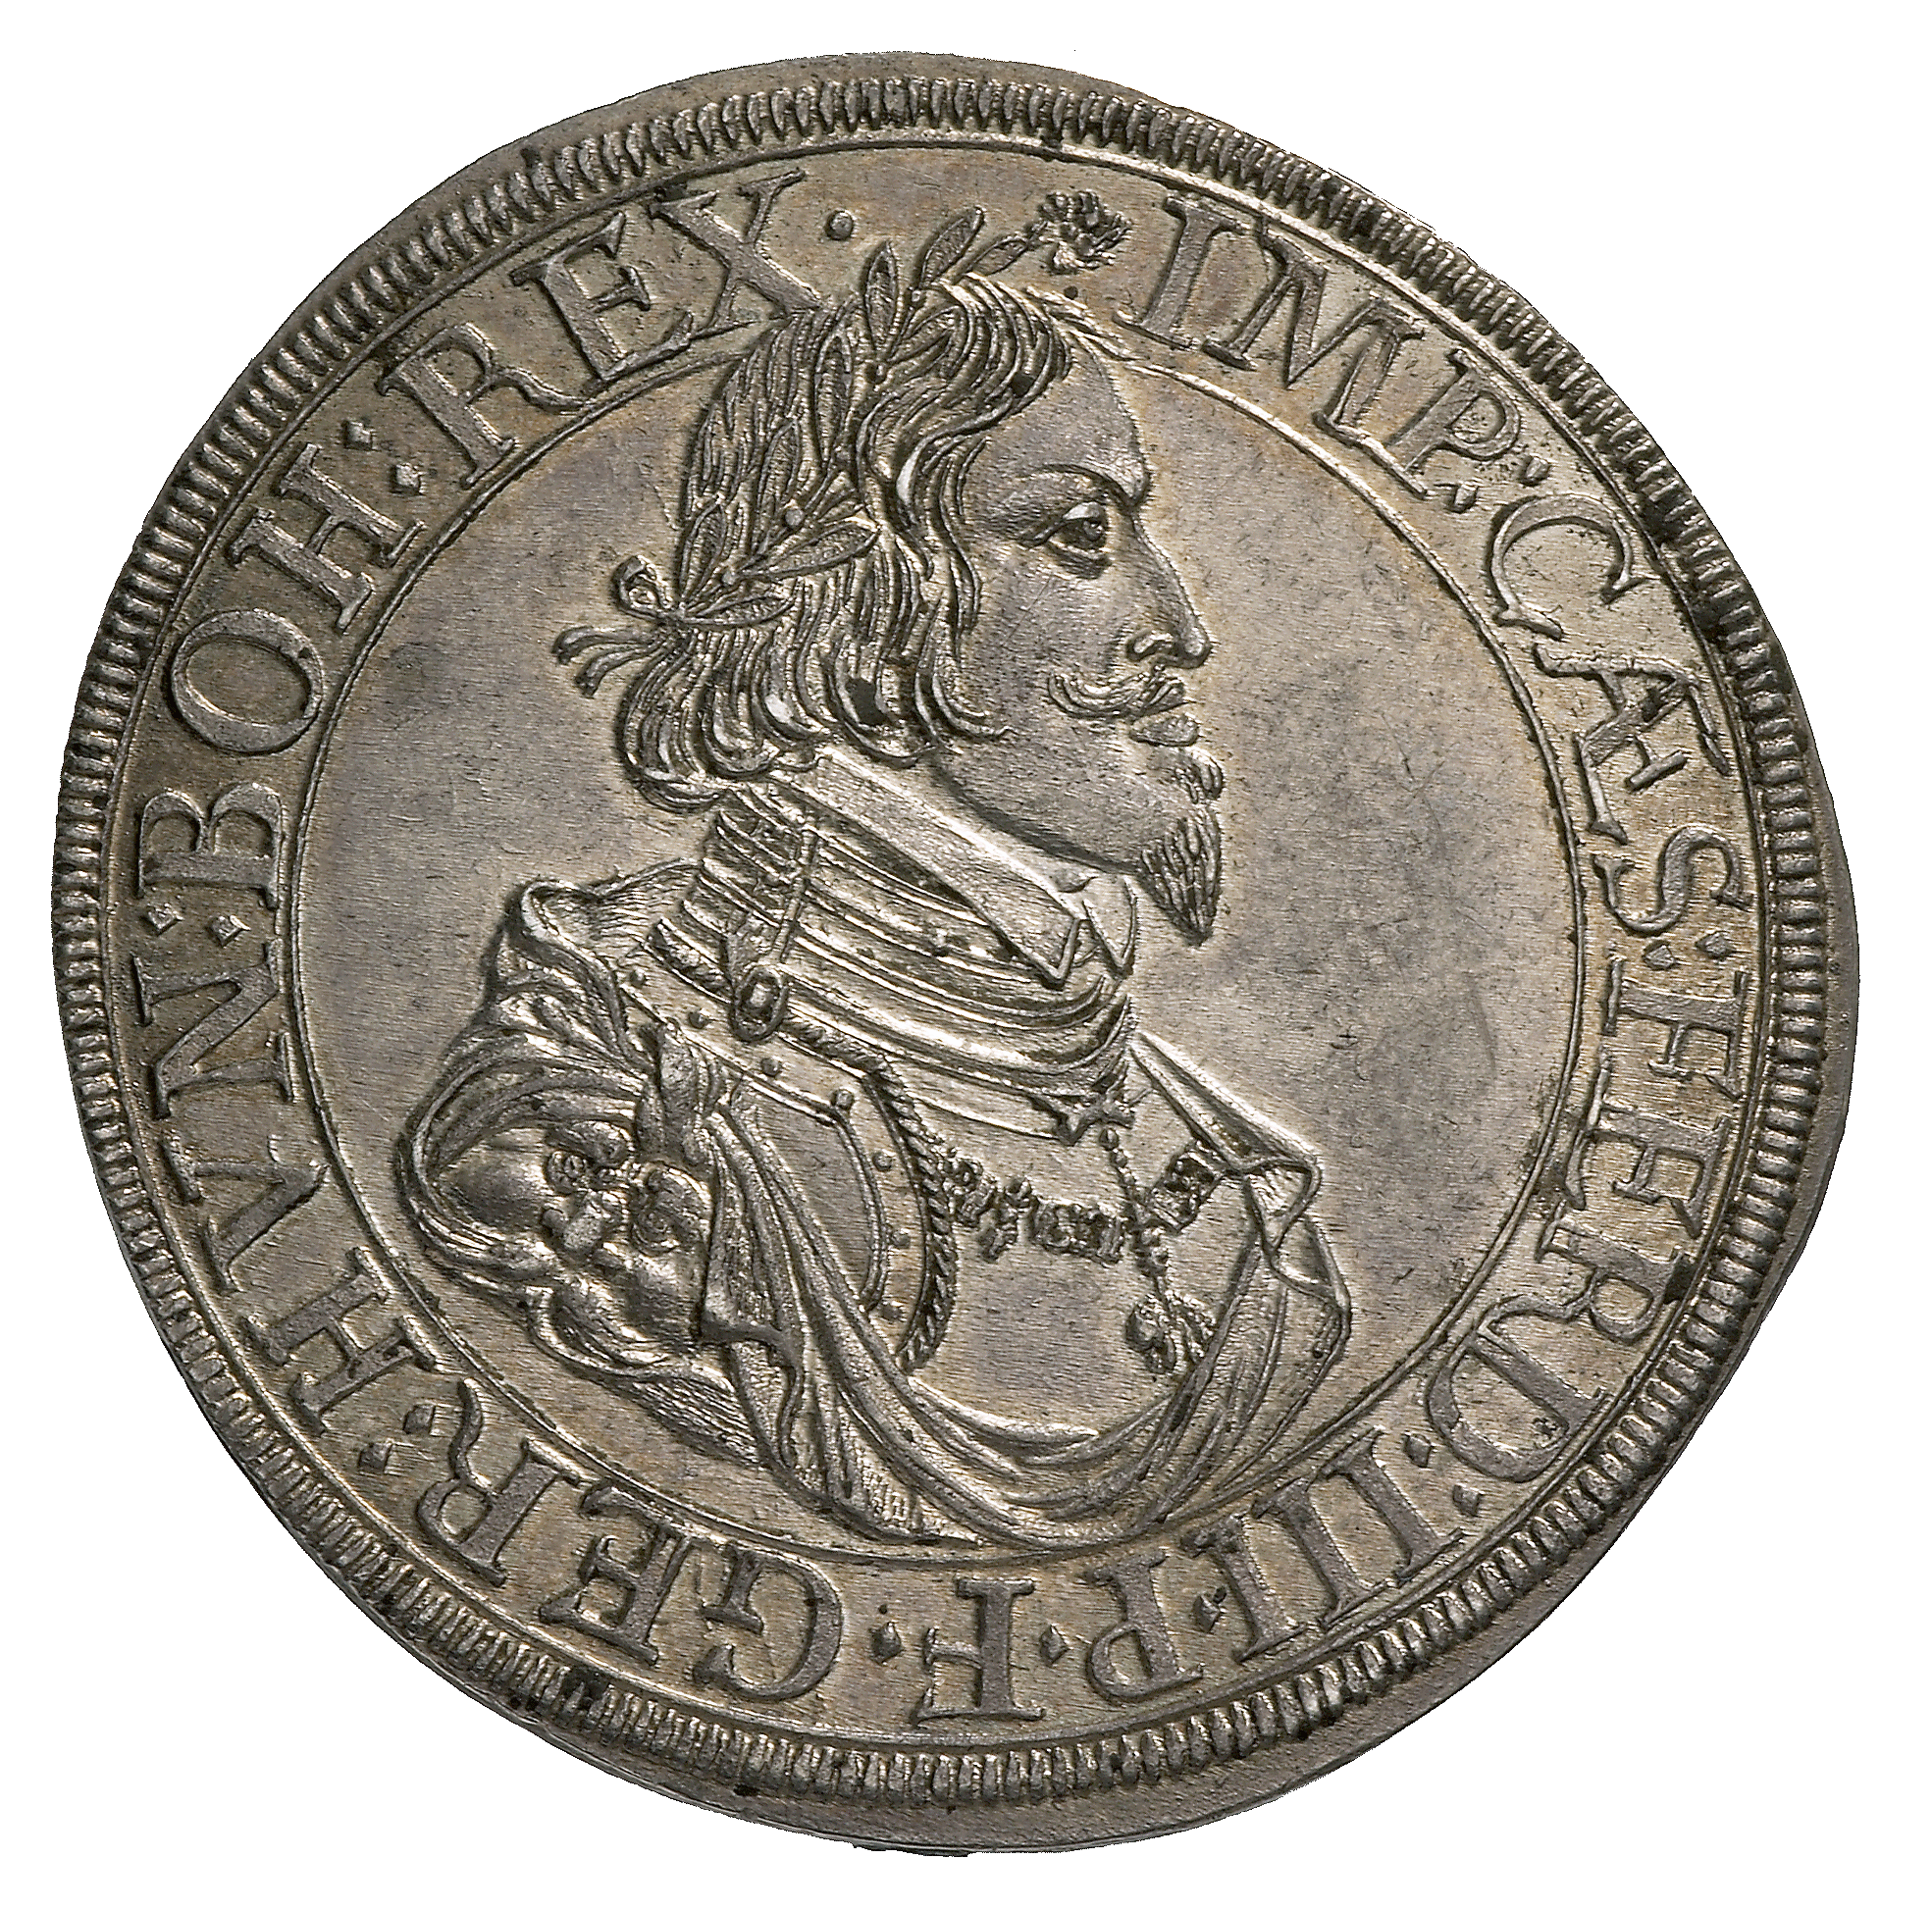 Heiliges Römisches Reich, Freie Reichsstadt Augsburg, Taler 1641 (obverse)